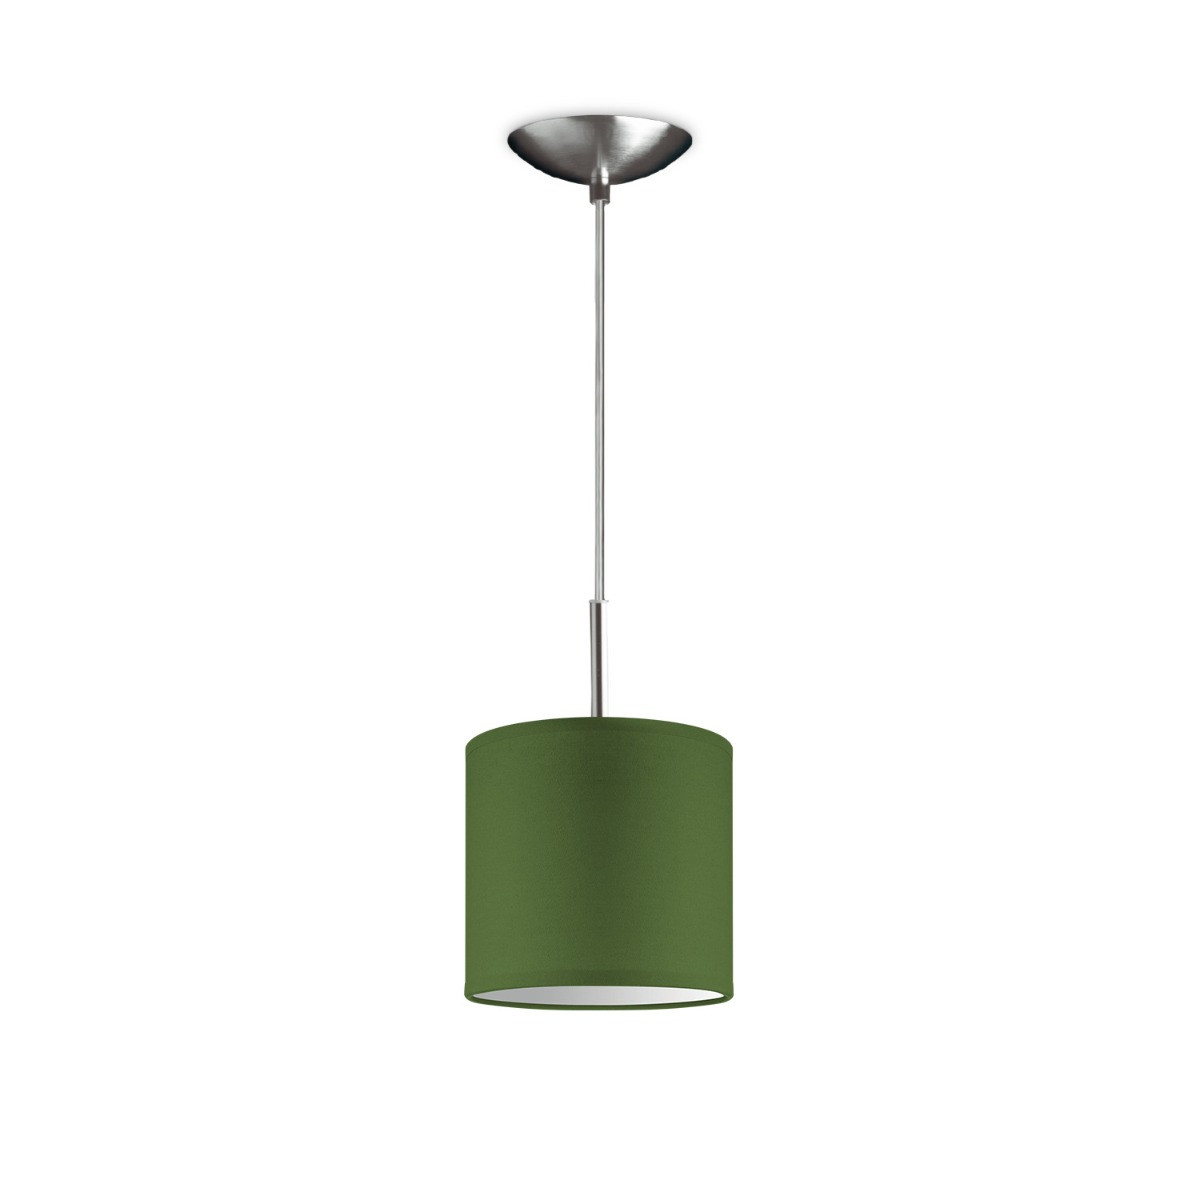 Light depot - hanglamp tube deluxe bling Ø 16 cm - groen - Outlet